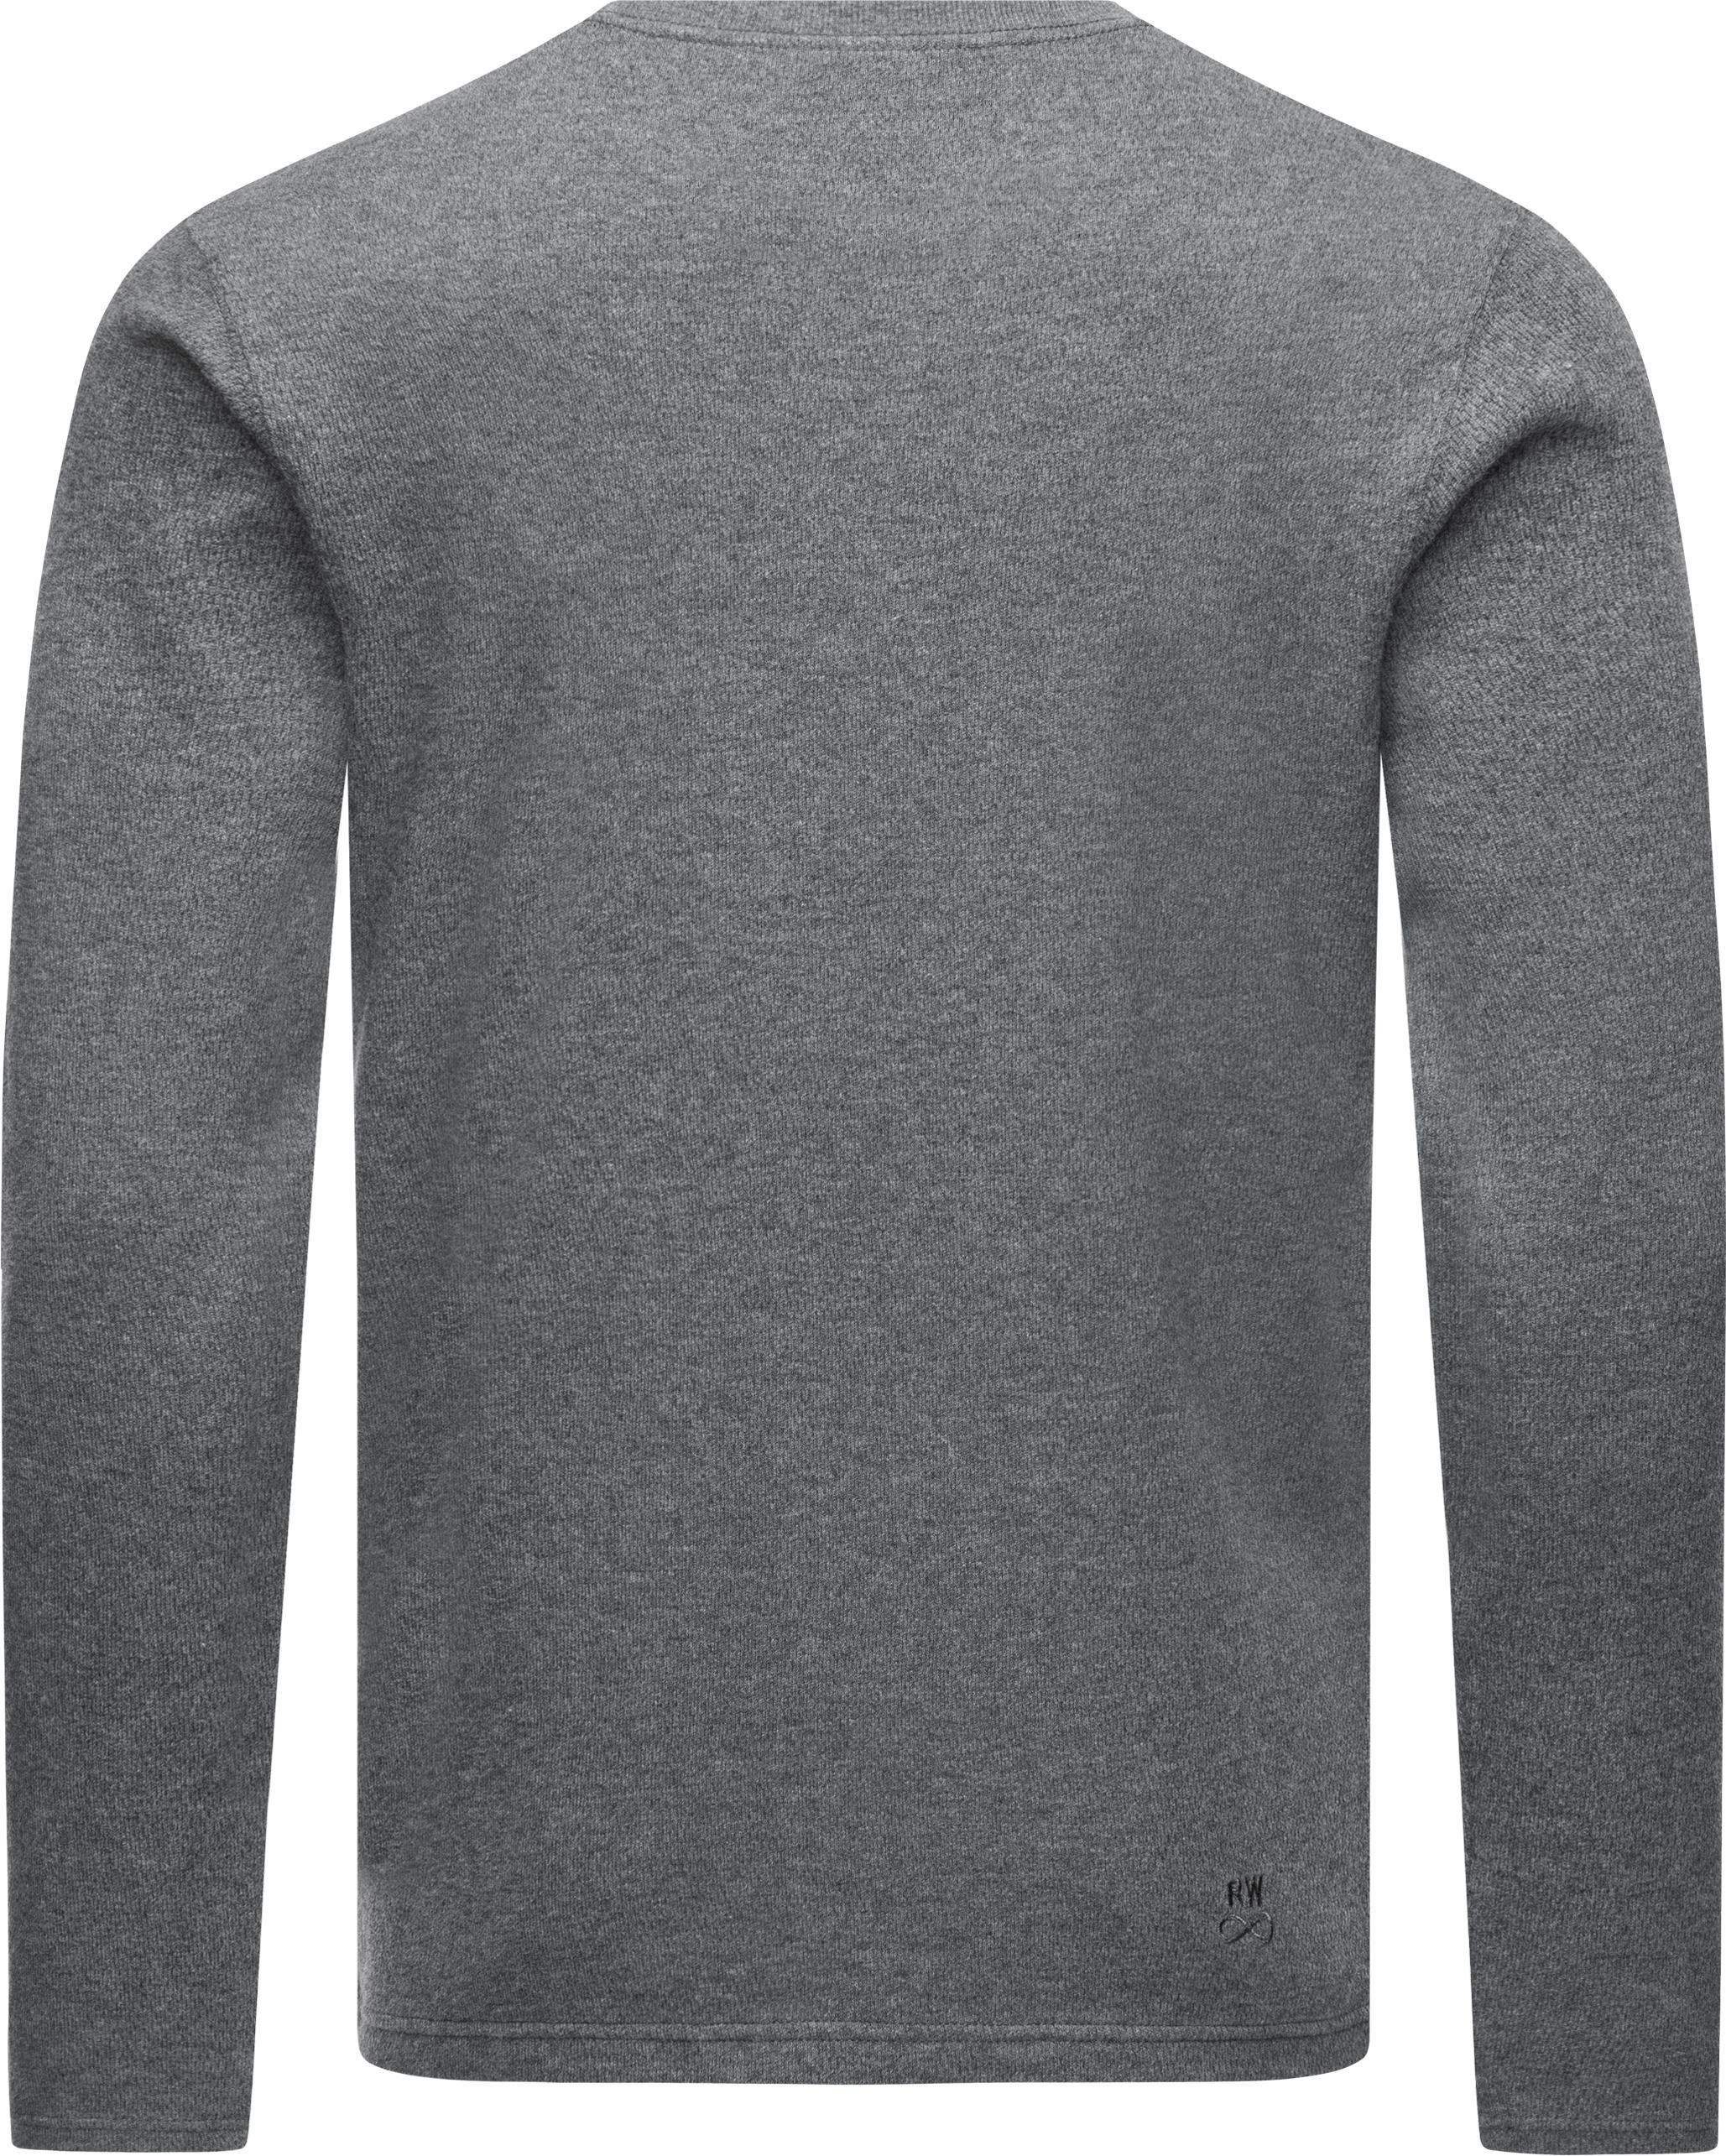 Sweatshirt grau Cyen Pullover Herren Ragwear Stylischer leichter